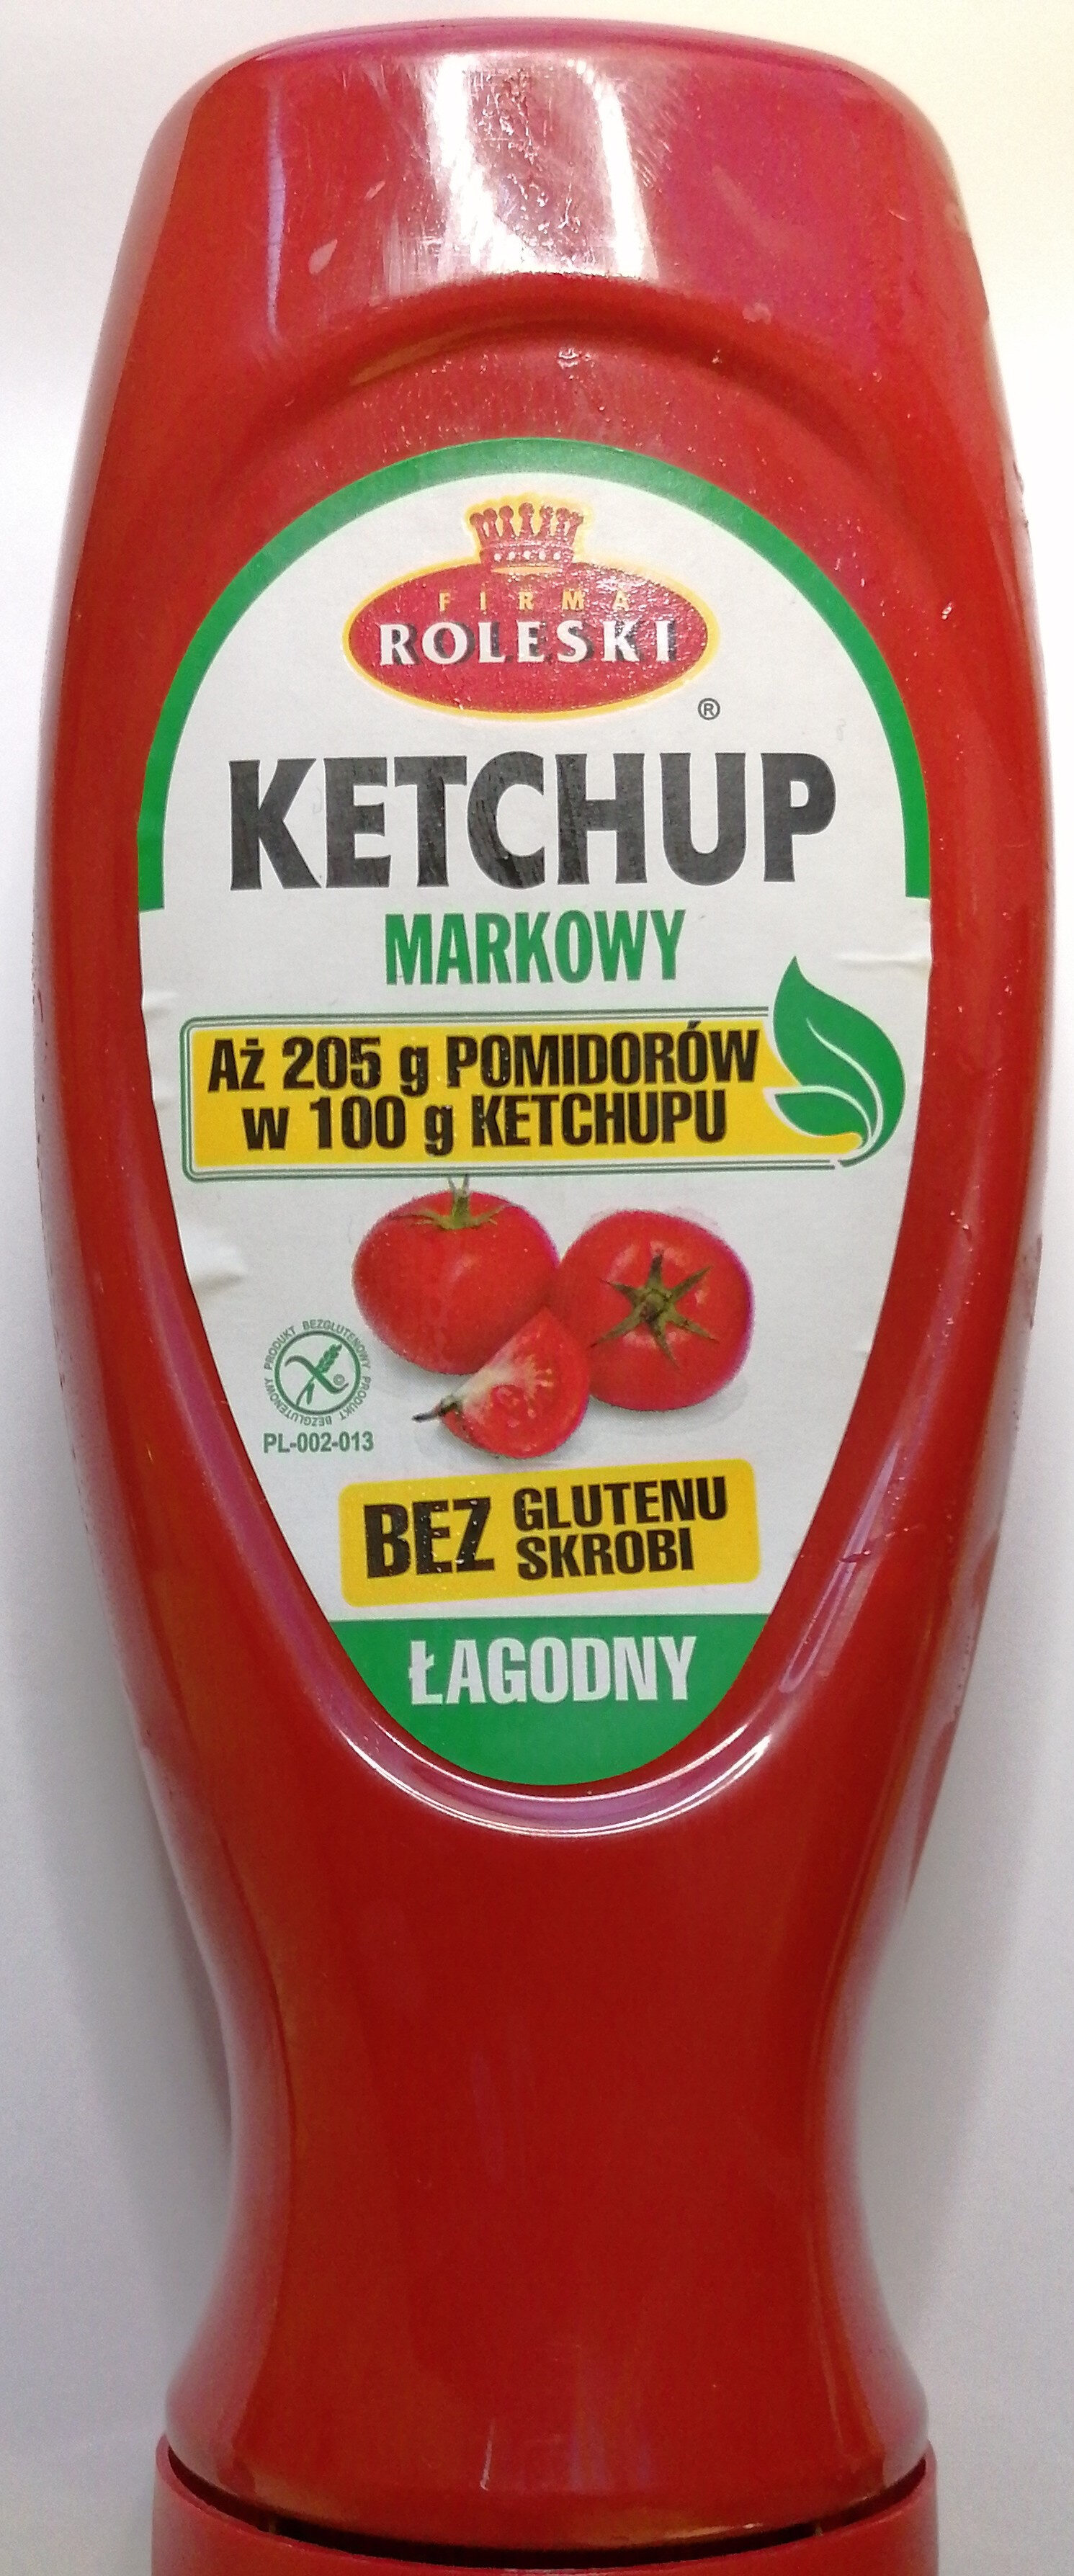 Ketchup łagodny markowy - Product